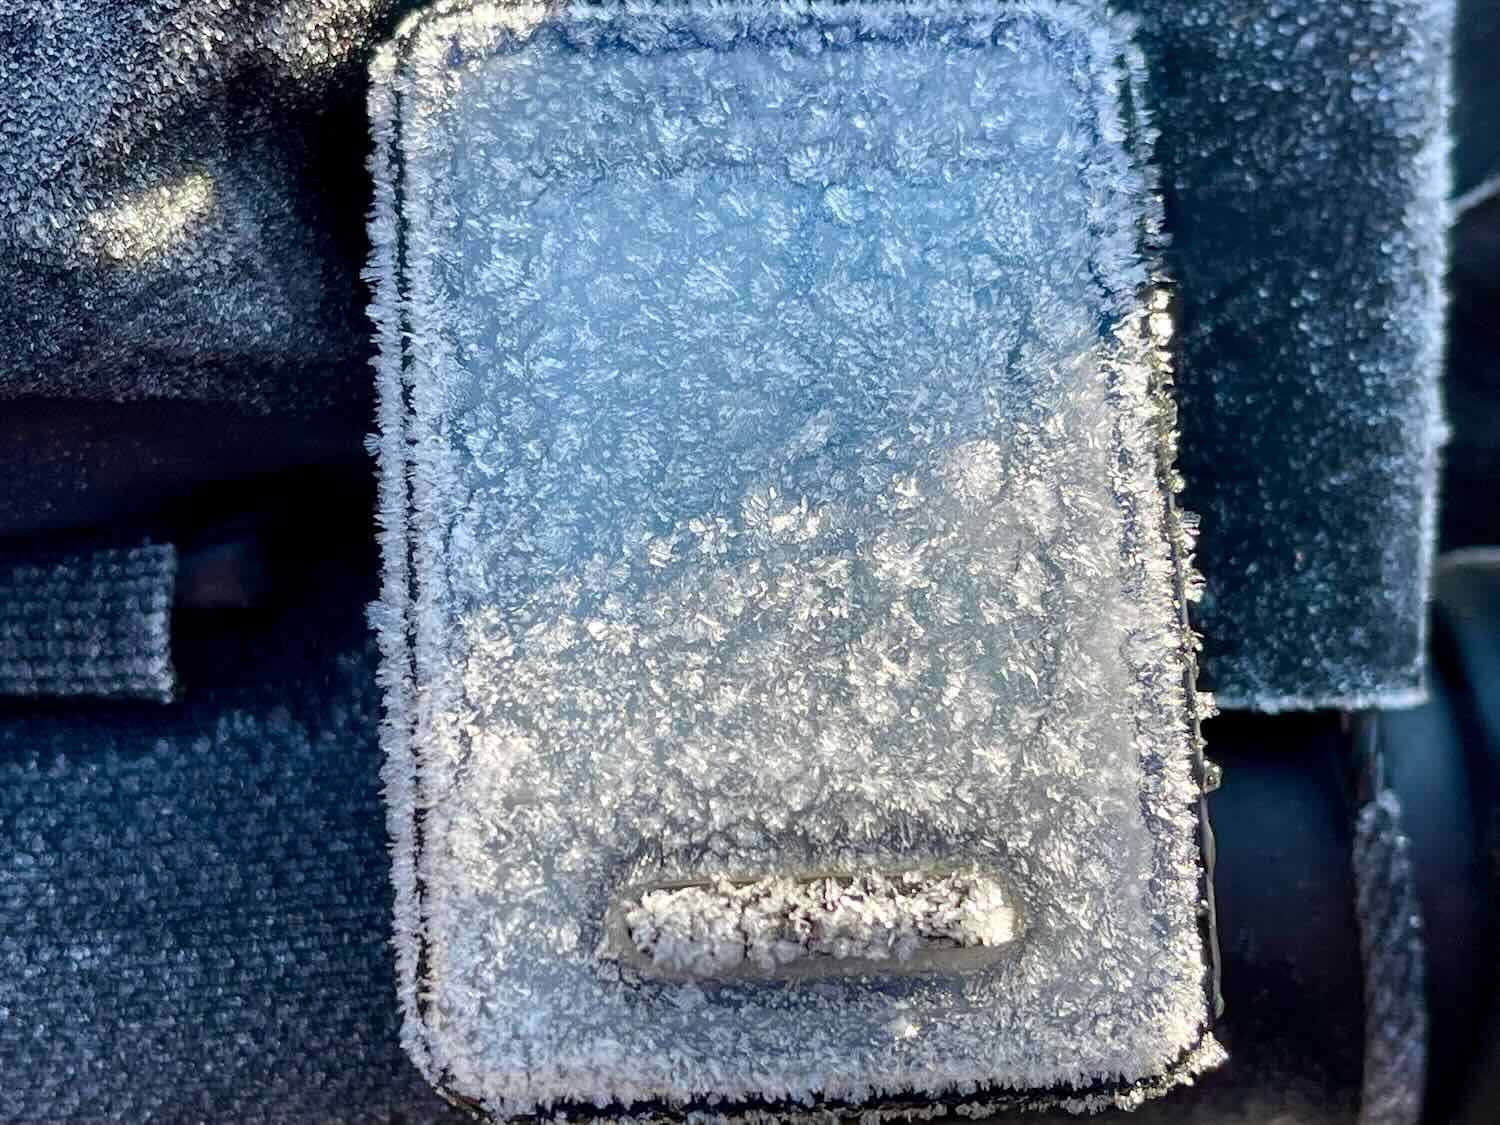 Frost on bike odometer